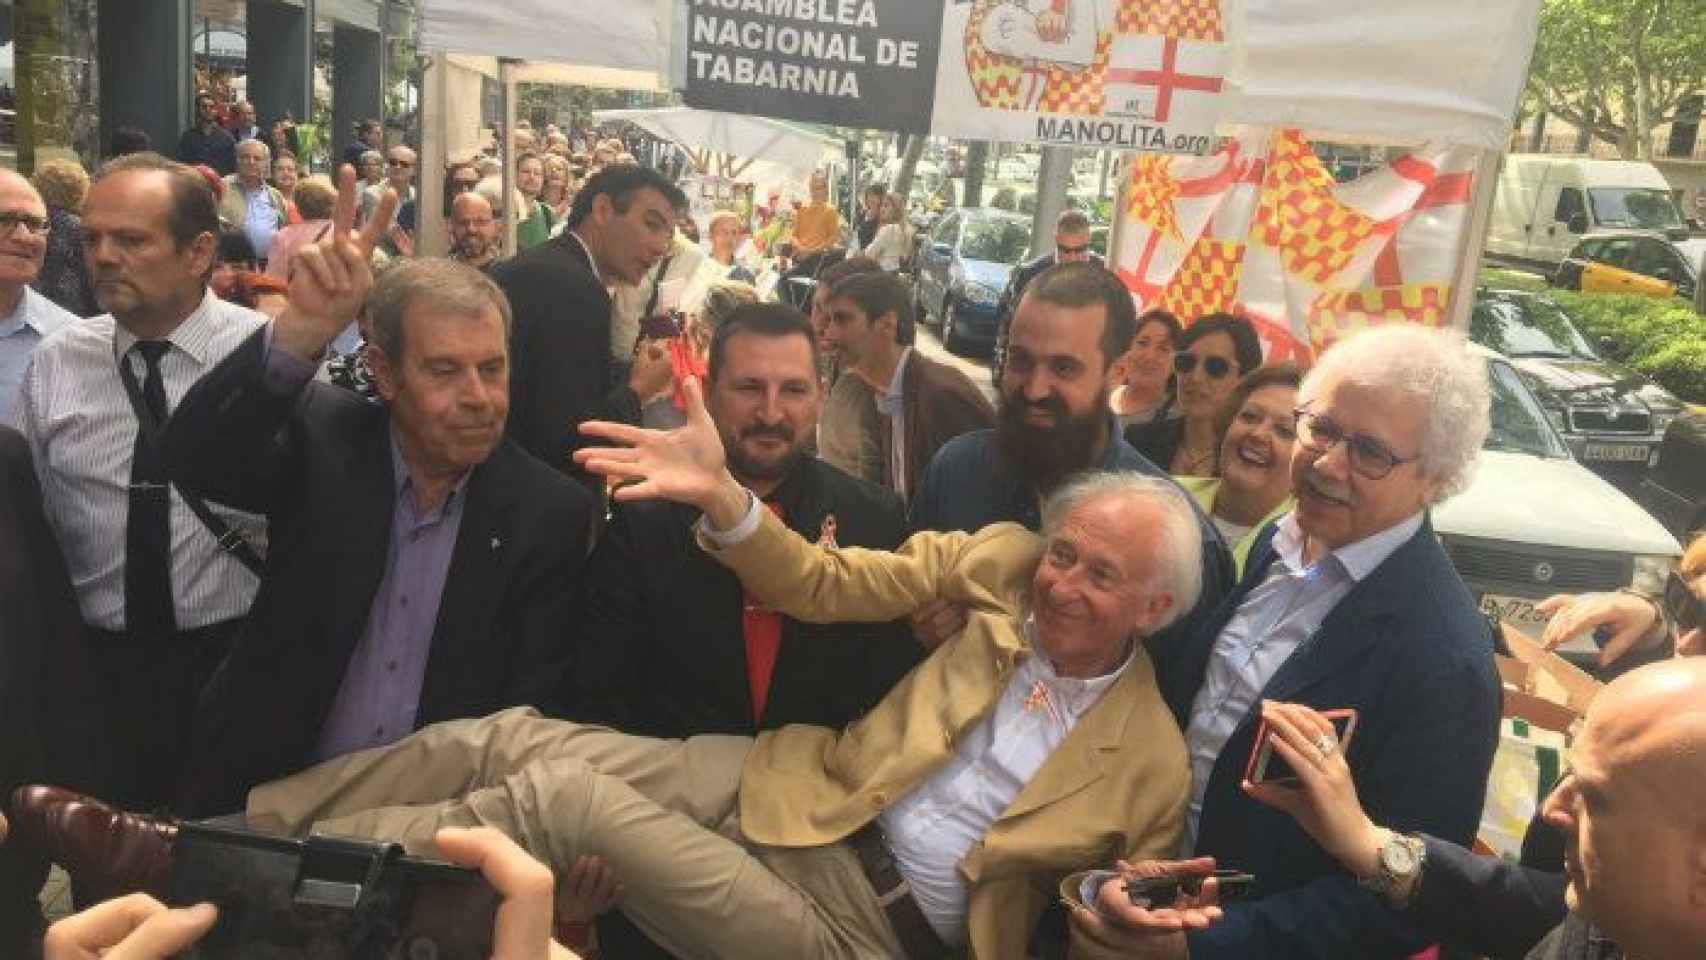 El Gobierno de Tabarnia, con Albert Boadella a la cabeza, se ha reunido de forma extraordinaria para celebrar Sant Jordi / XAVIER ADELL